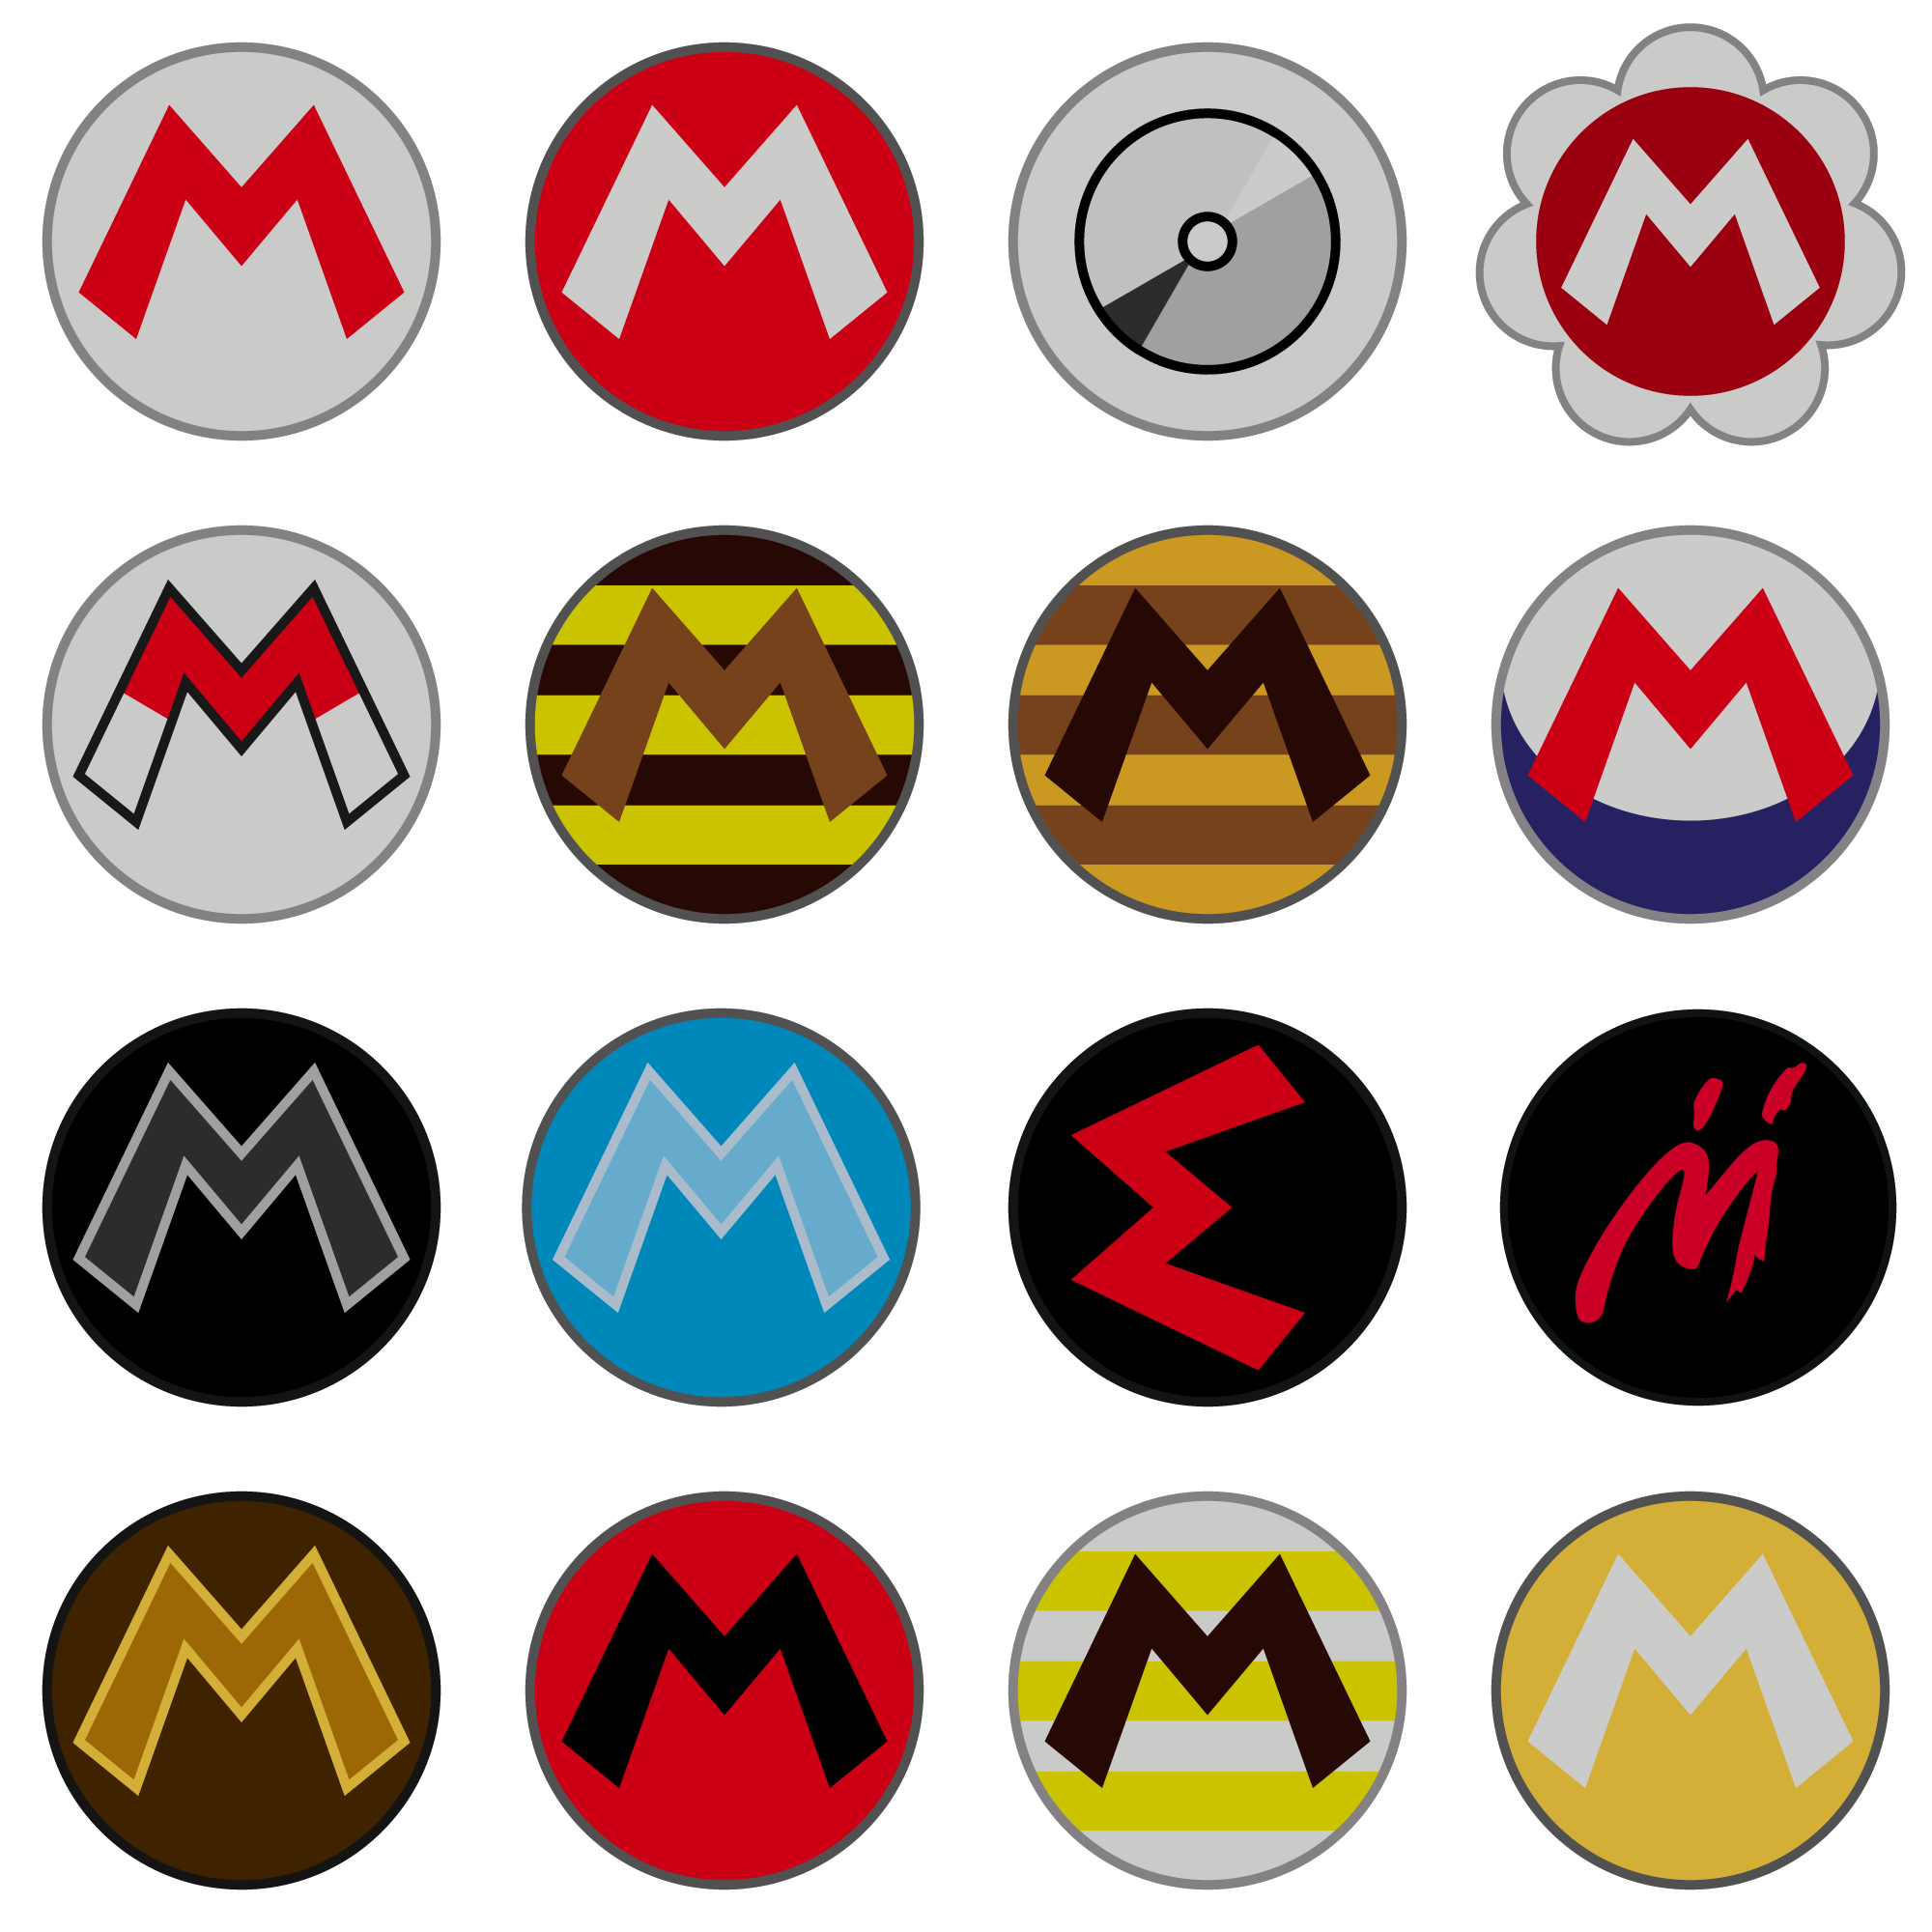 Mario-emblems2.png